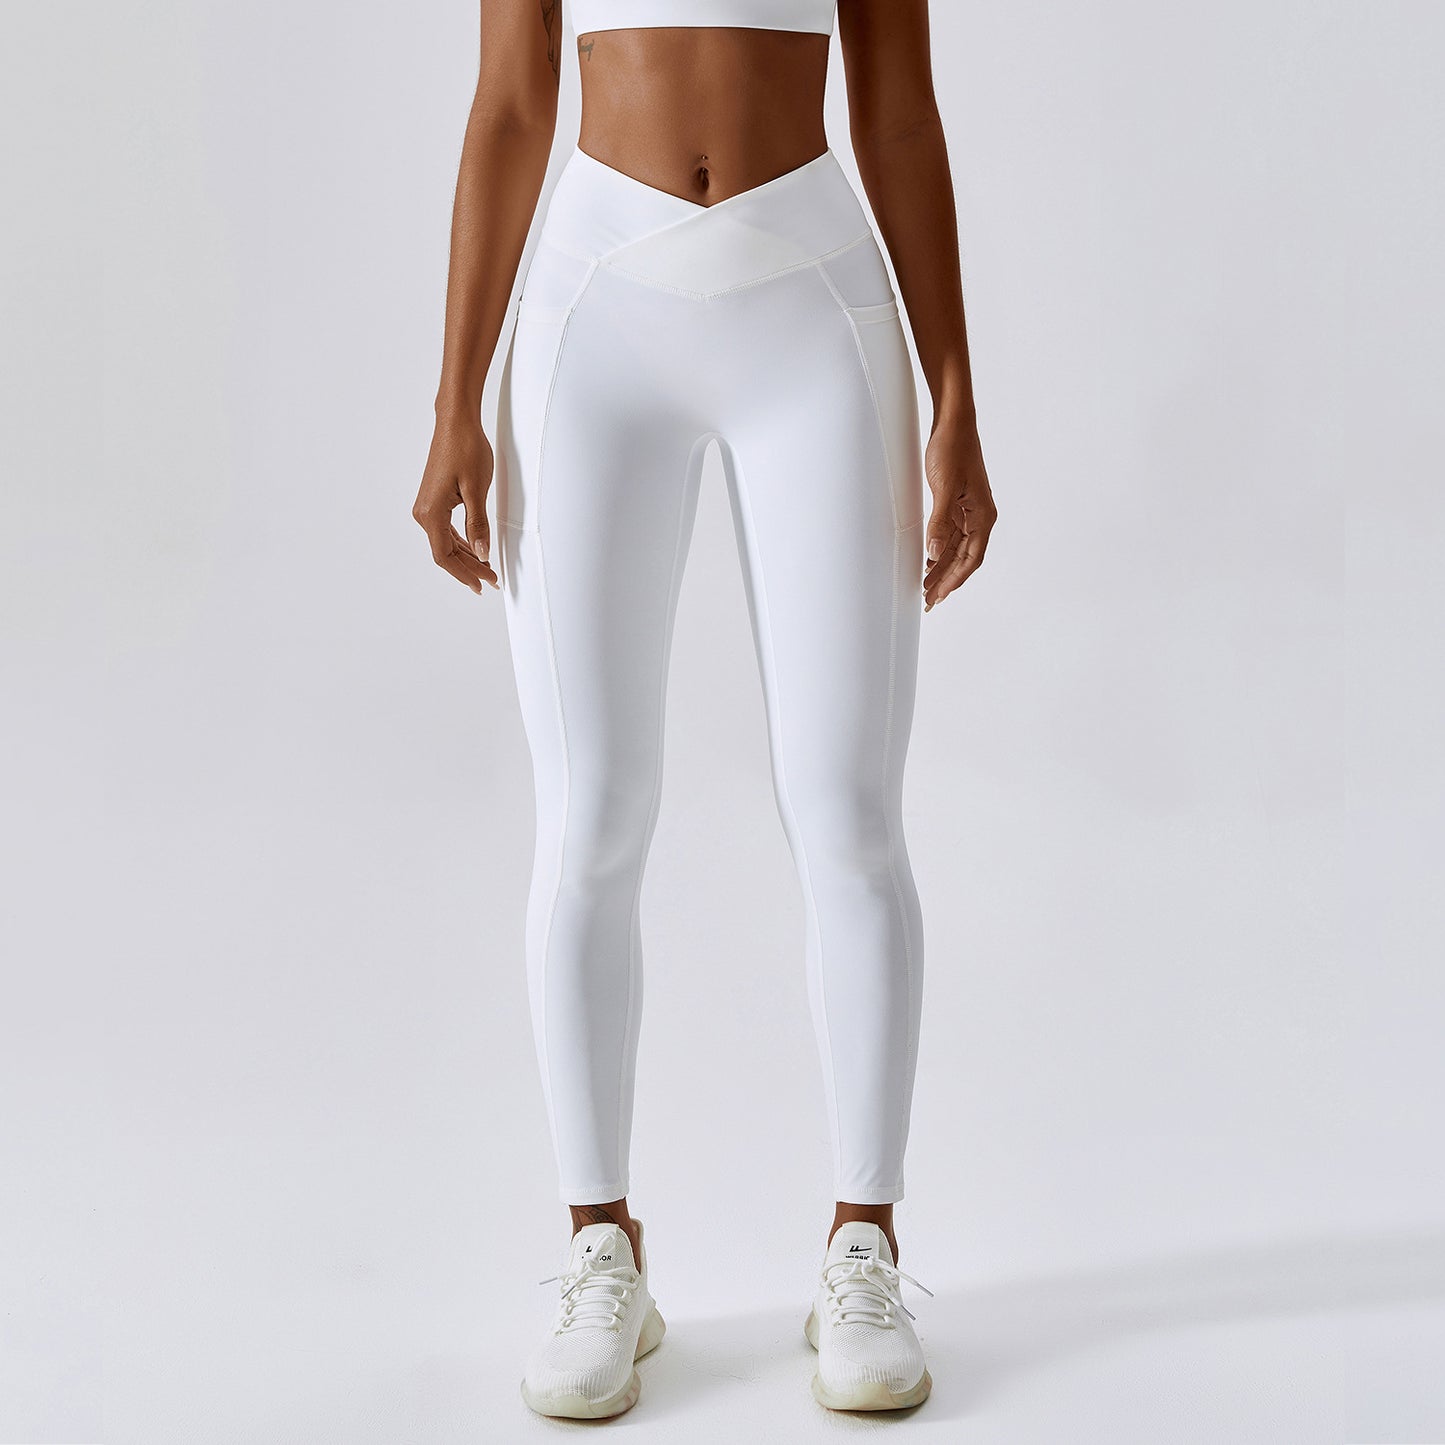 High waist V-Cut legging in White